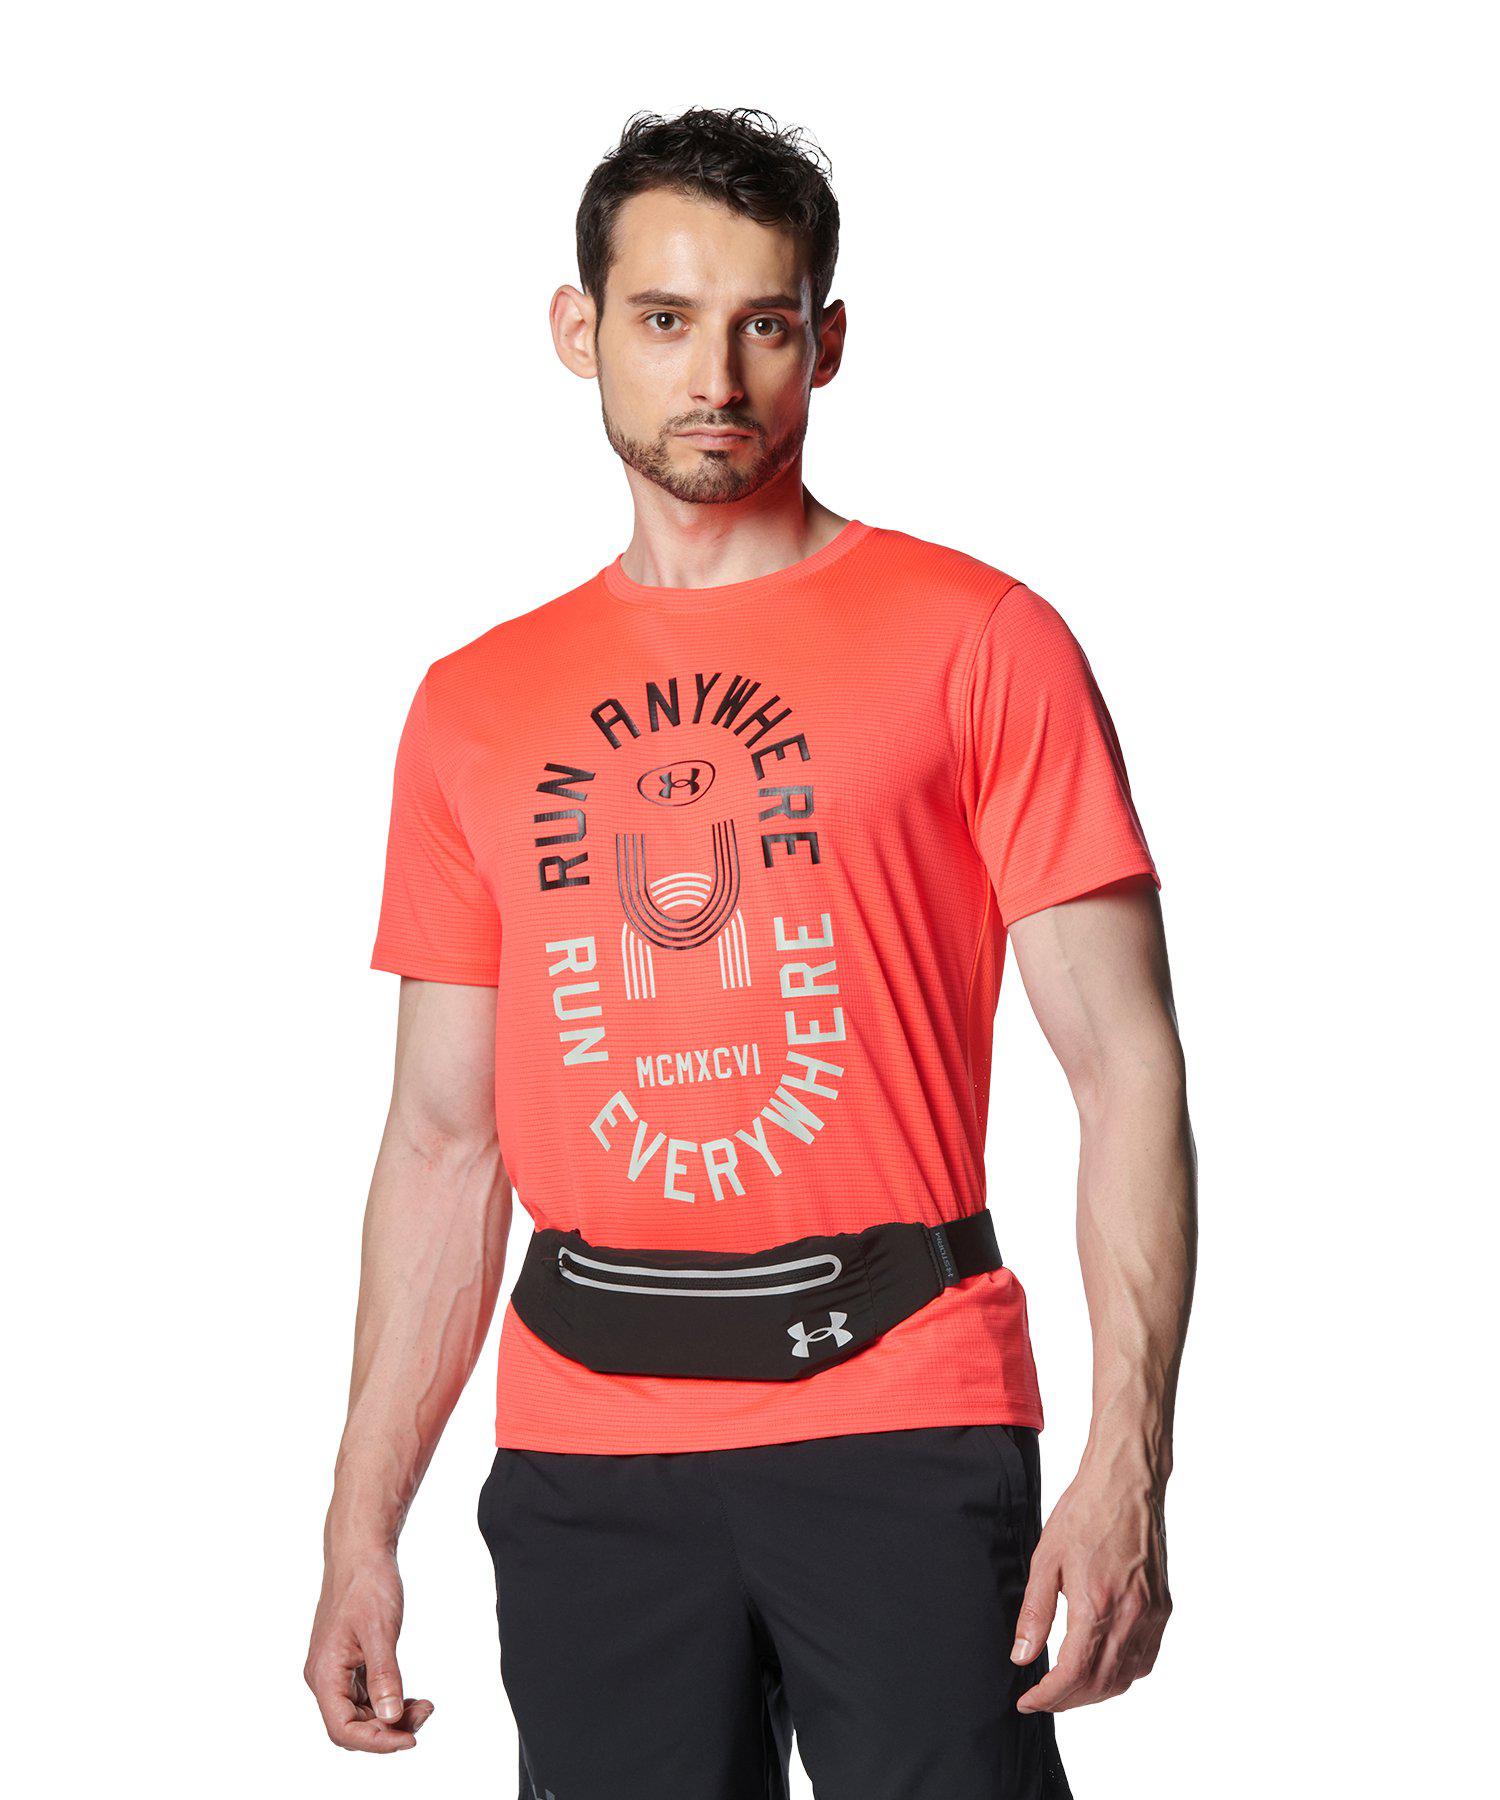 公式 アンダーアーマー UNDER ARMOUR メンズ ランニング Tシャツ UAランエブリウェア ストライド ショートスリーブTシャツ 半袖 陸上 マラソン 1381379 アウトドア スポーツ ジム 運動 部活 吸汗 速乾 メッシュ 通気性 吸汗